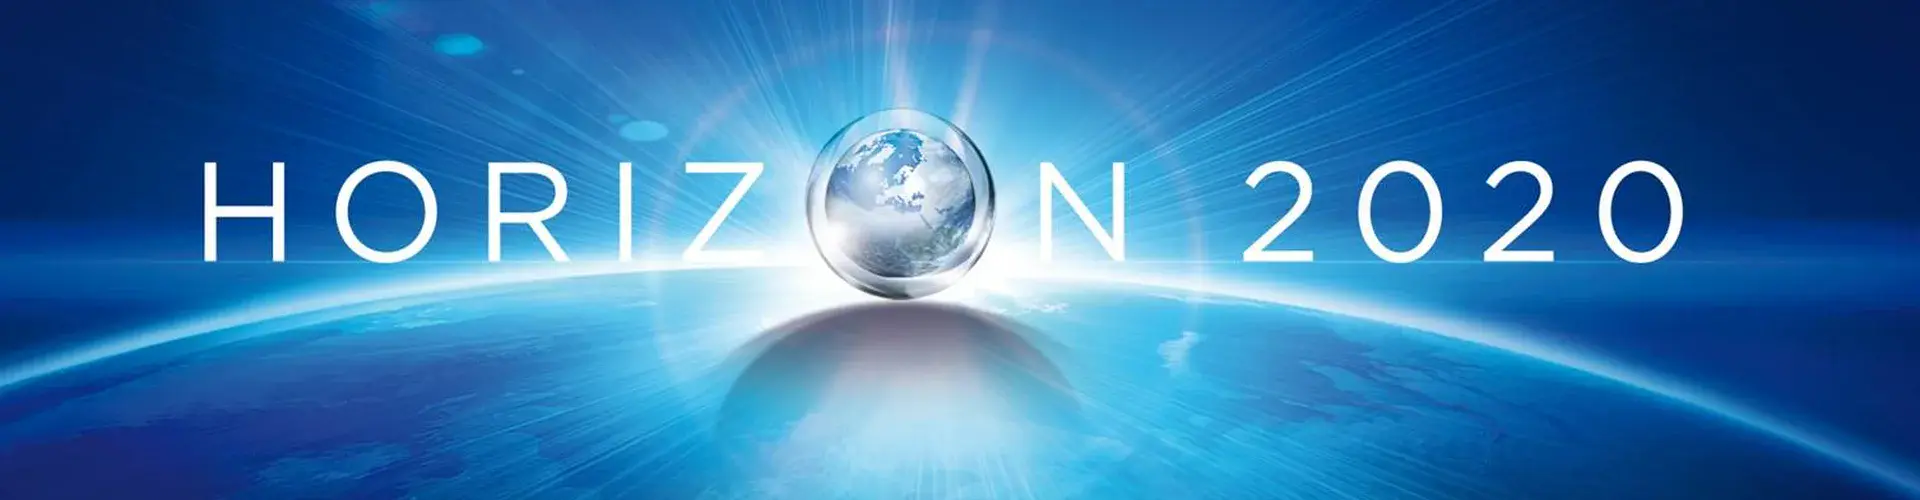 Horizon 2020 banner